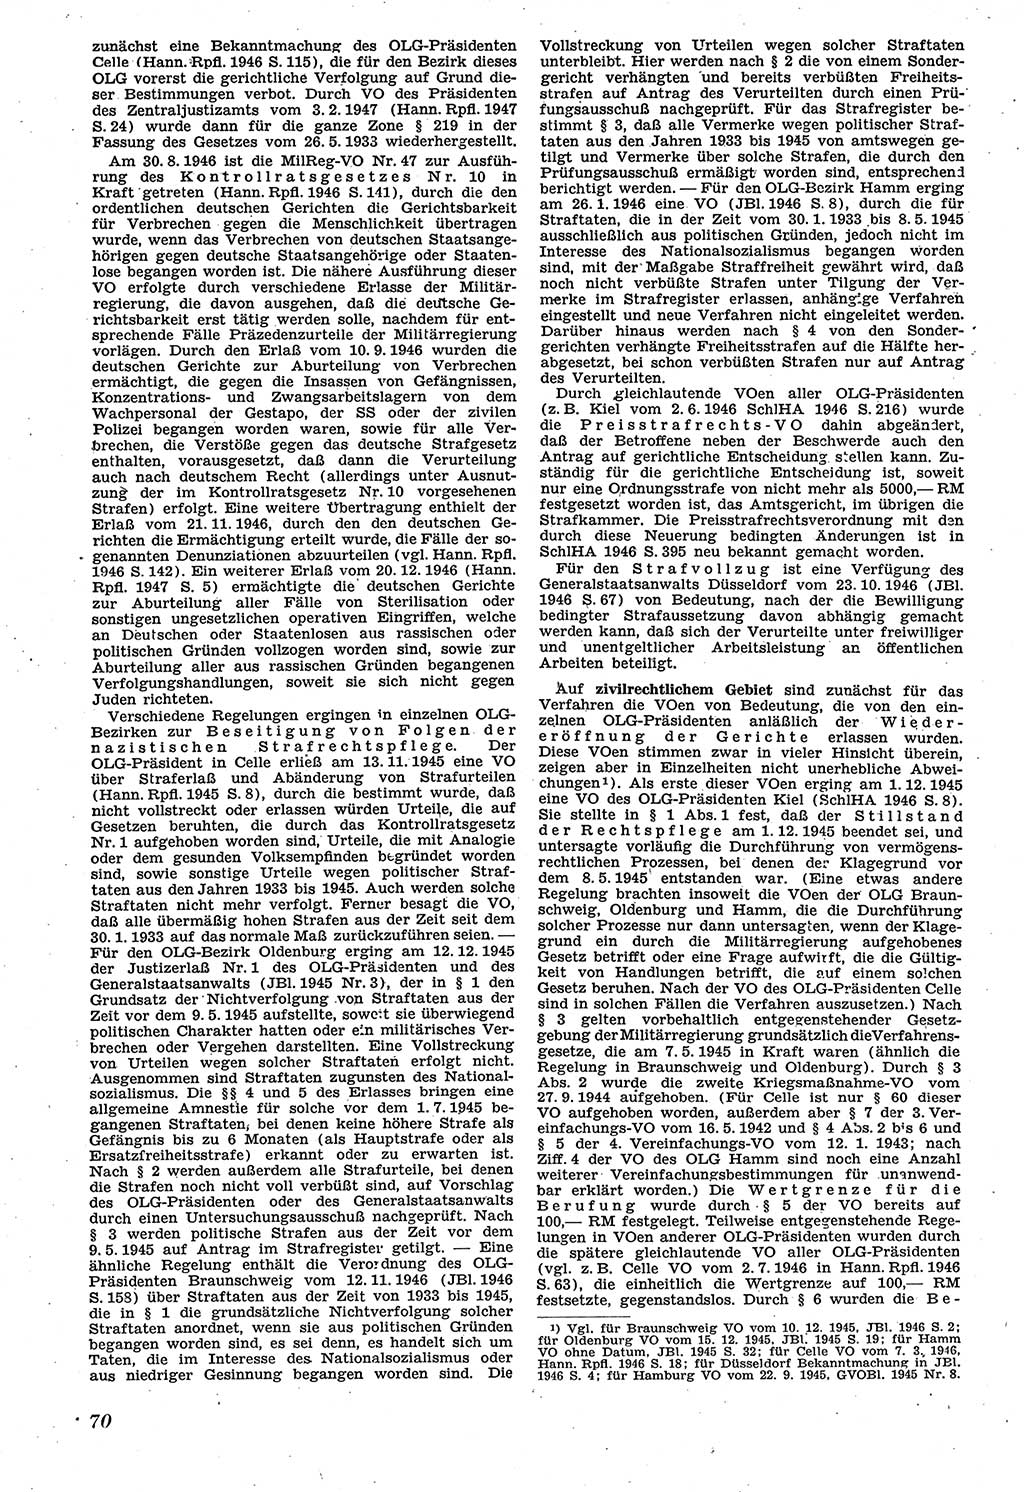 Neue Justiz (NJ), Zeitschrift für Recht und Rechtswissenschaft [Sowjetische Besatzungszone (SBZ) Deutschland], 1. Jahrgang 1947, Seite 70 (NJ SBZ Dtl. 1947, S. 70)